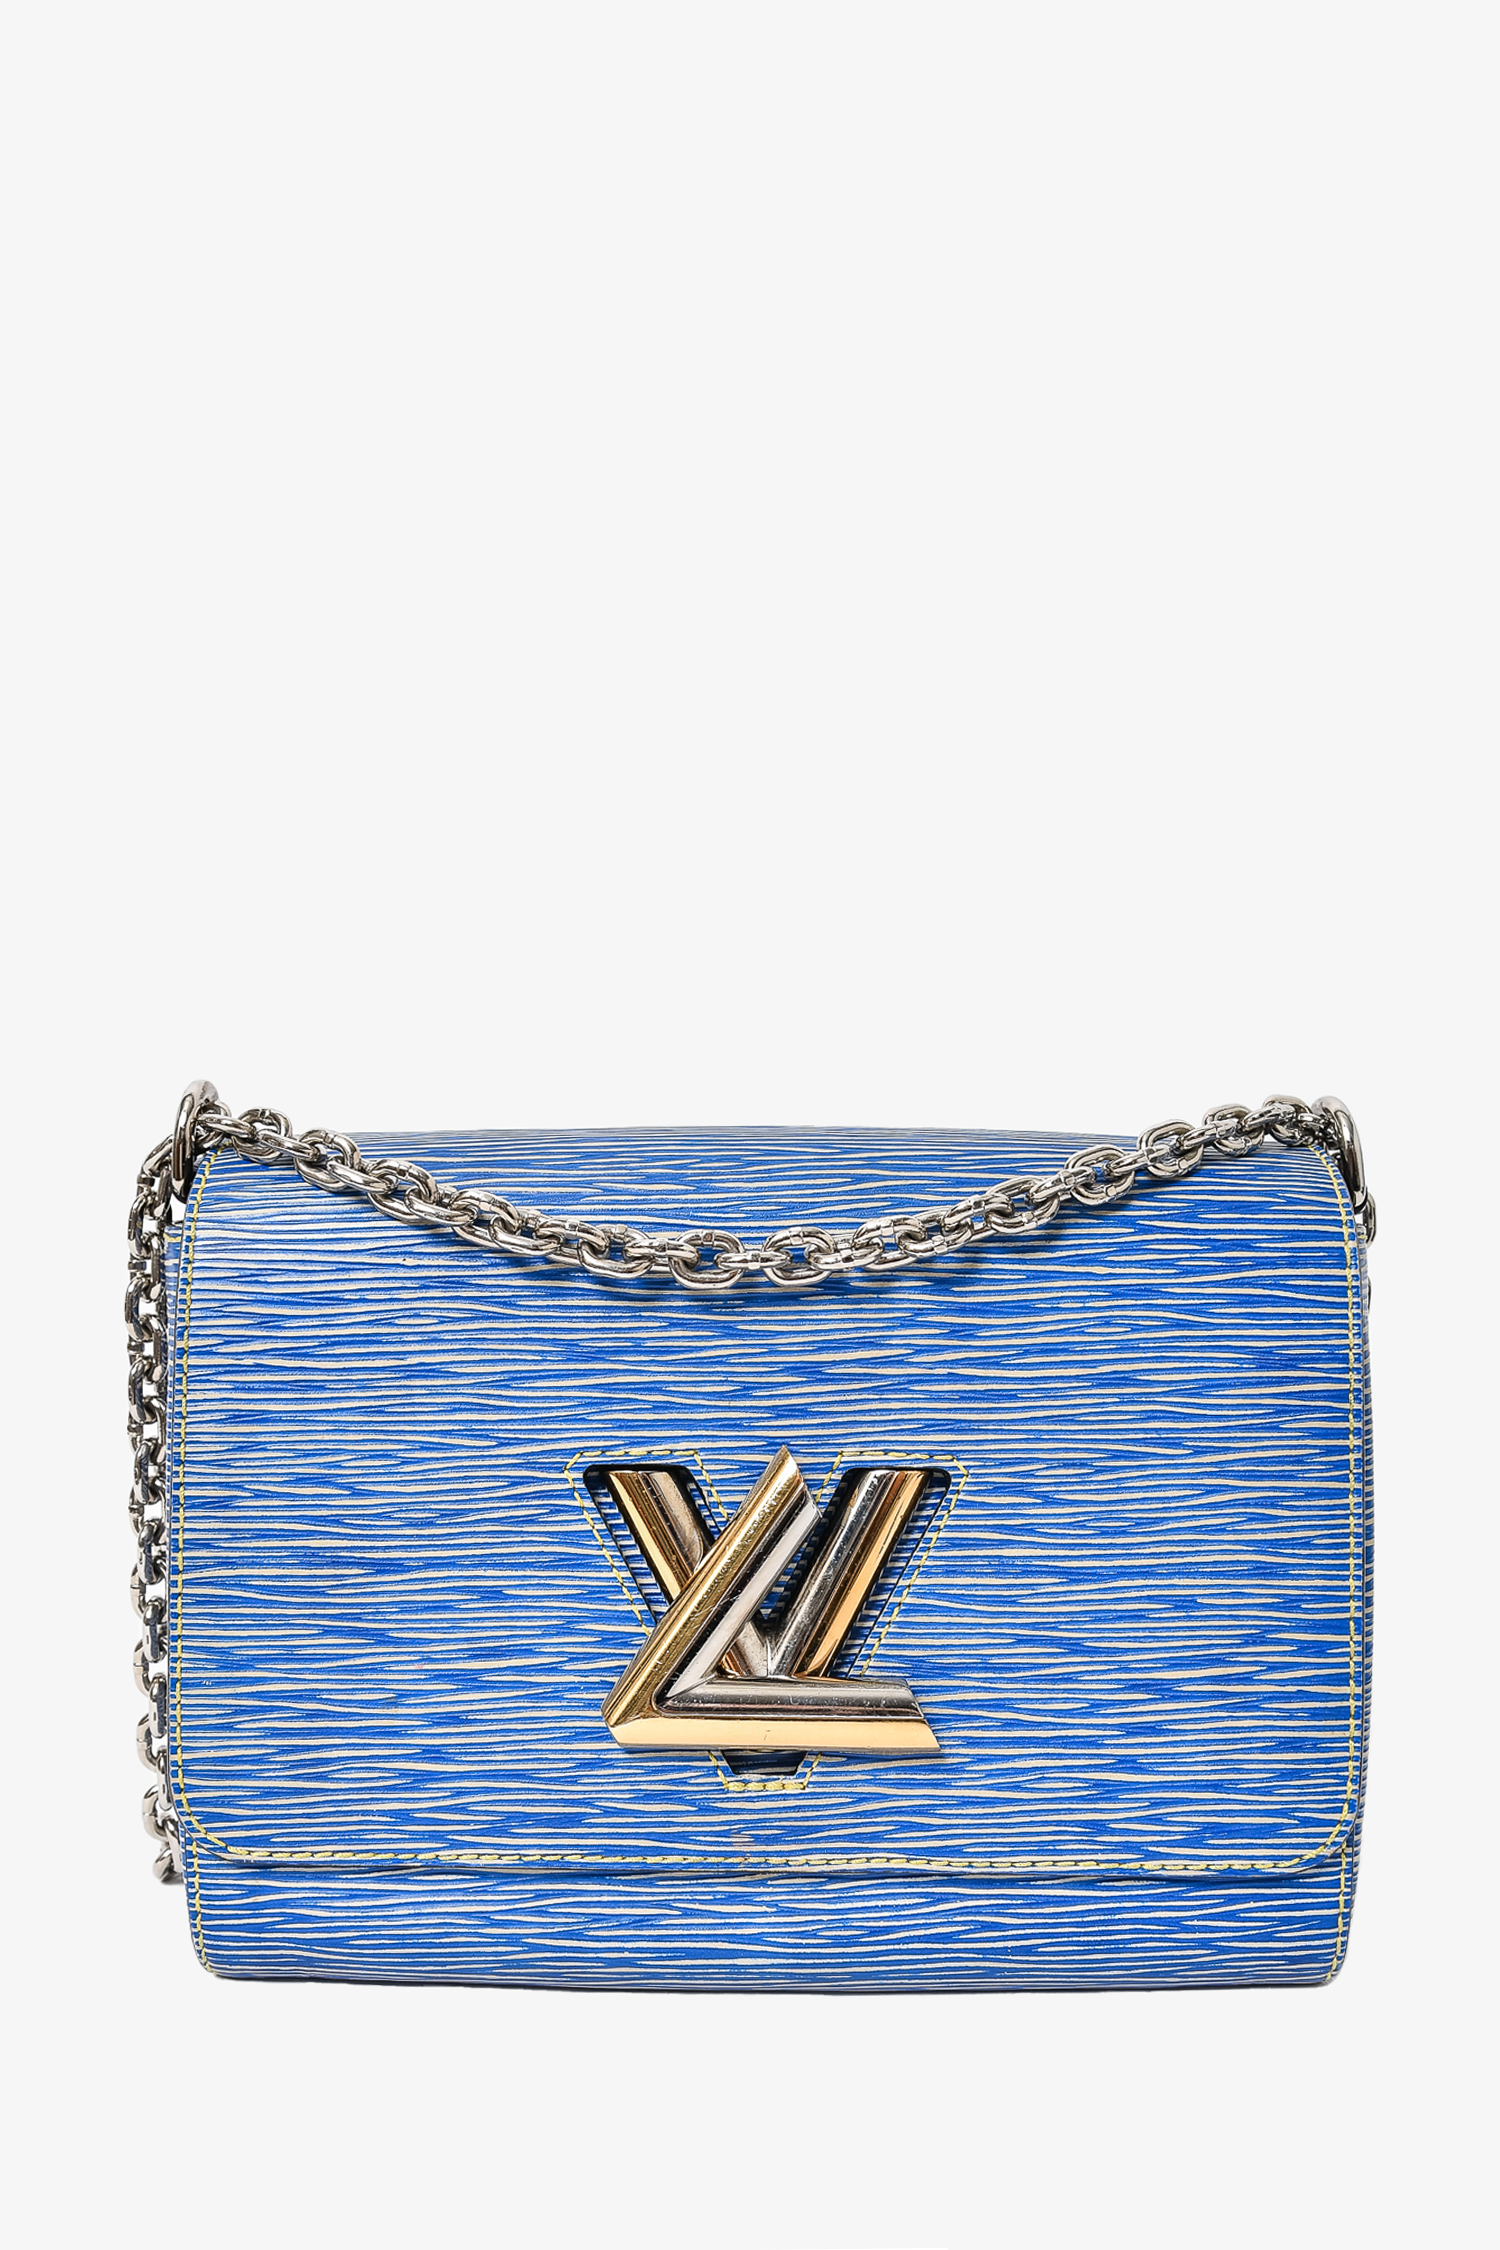 Louis Vuitton Twist Leather Shoulder Bag